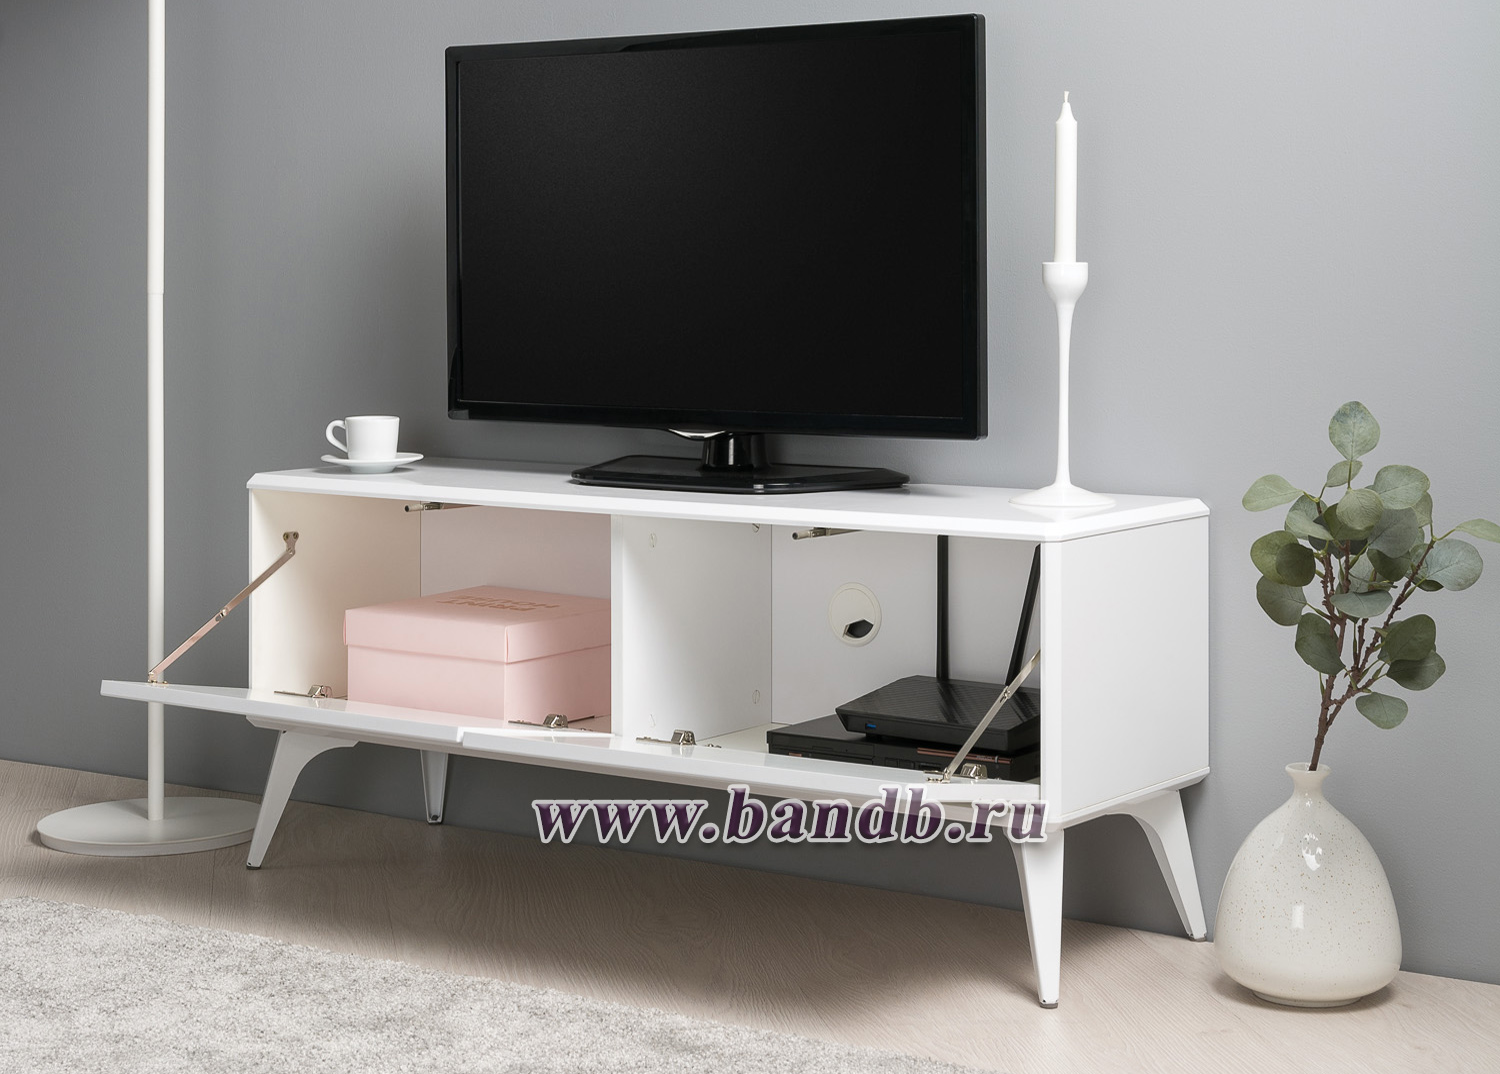 Мебель для спальни Валенсия: шкаф, кровать и ТВ-тумба цвет белый шагрень Картинка № 11